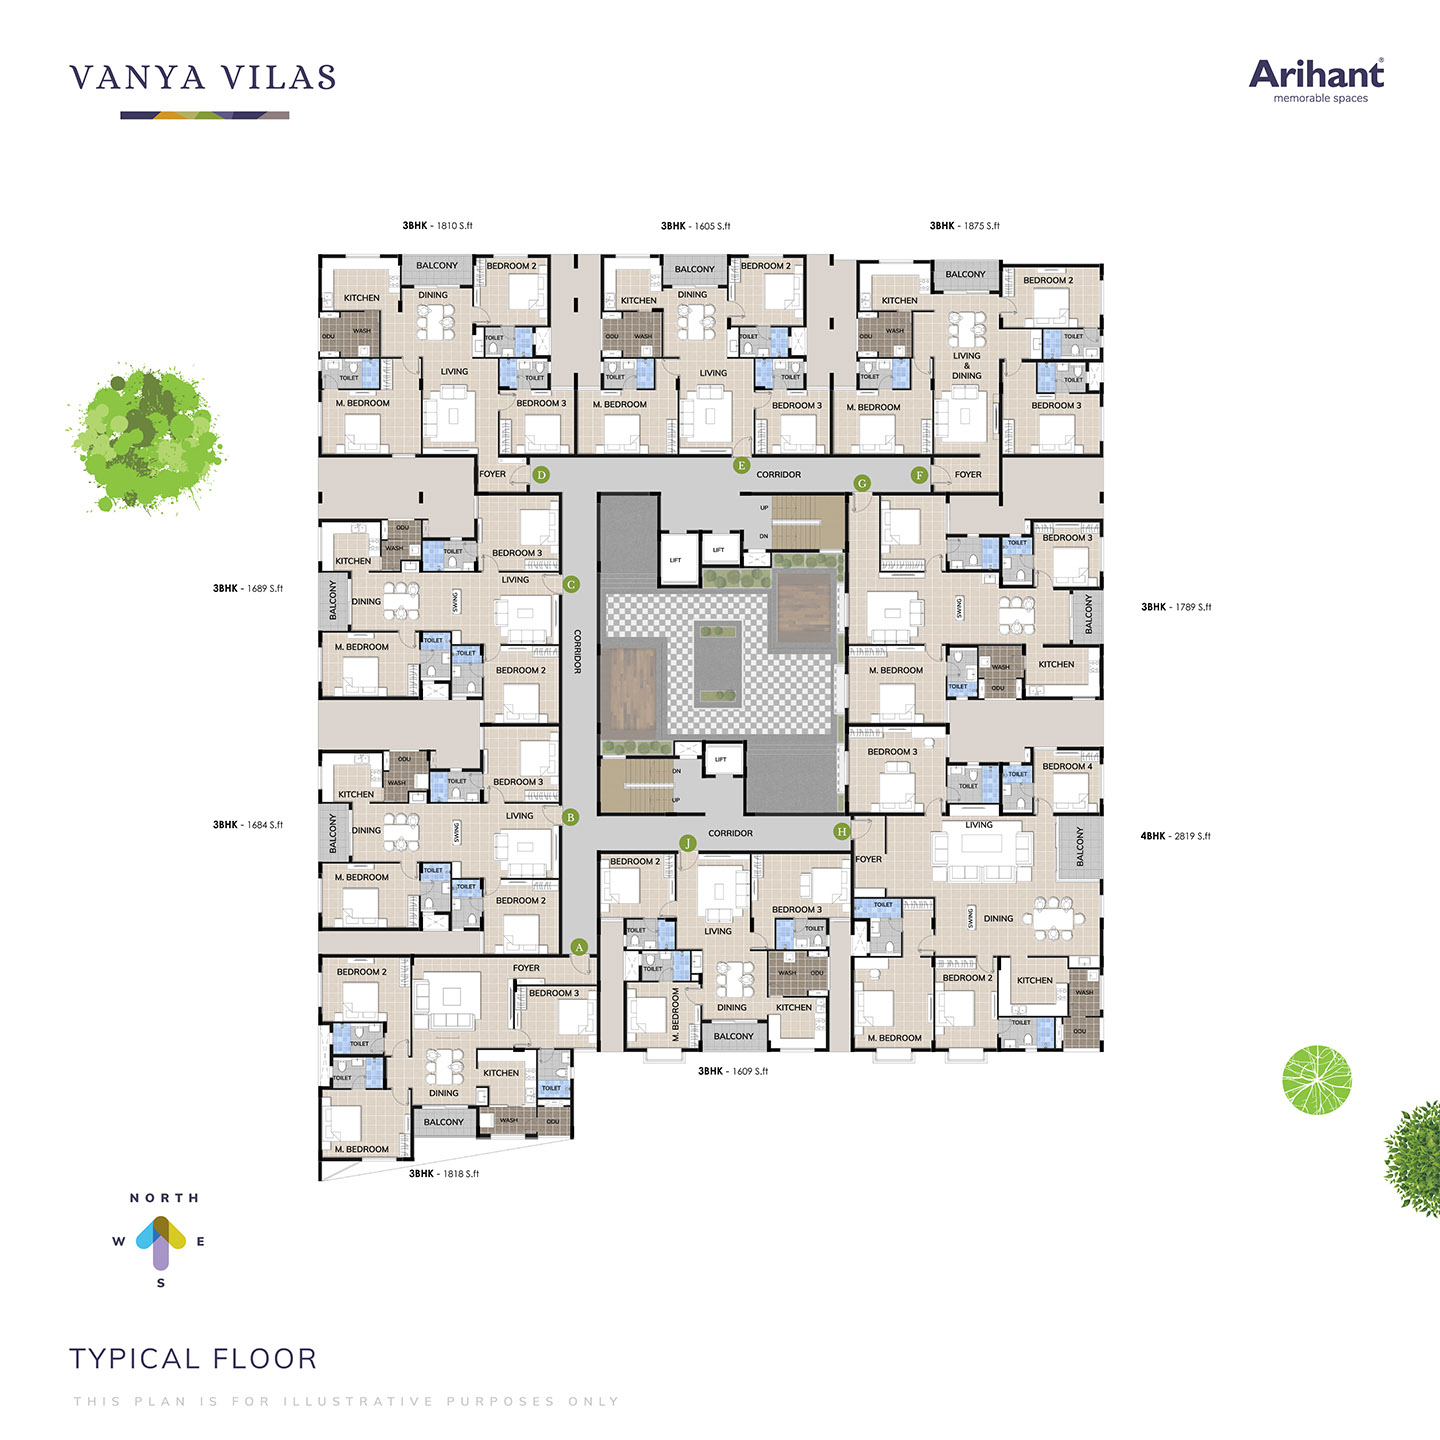 Vanya-Villas-_Typical-Floor